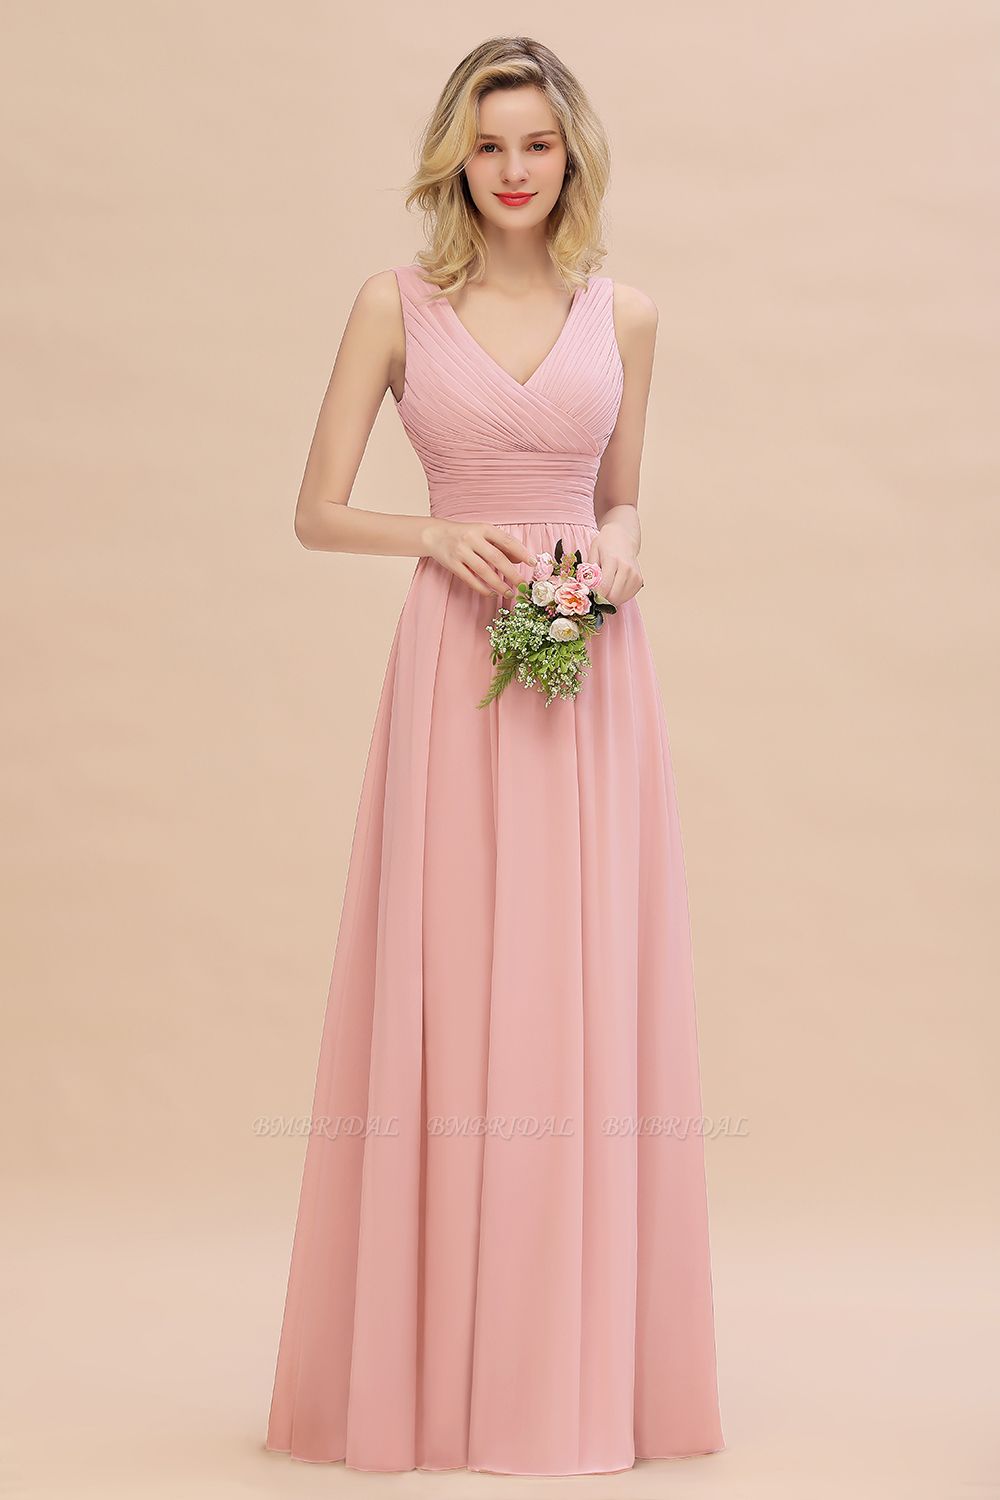 BMbridal Elegant V-Neck Dusty Rose Chiffon Bridesmaid Dress with Ruffle